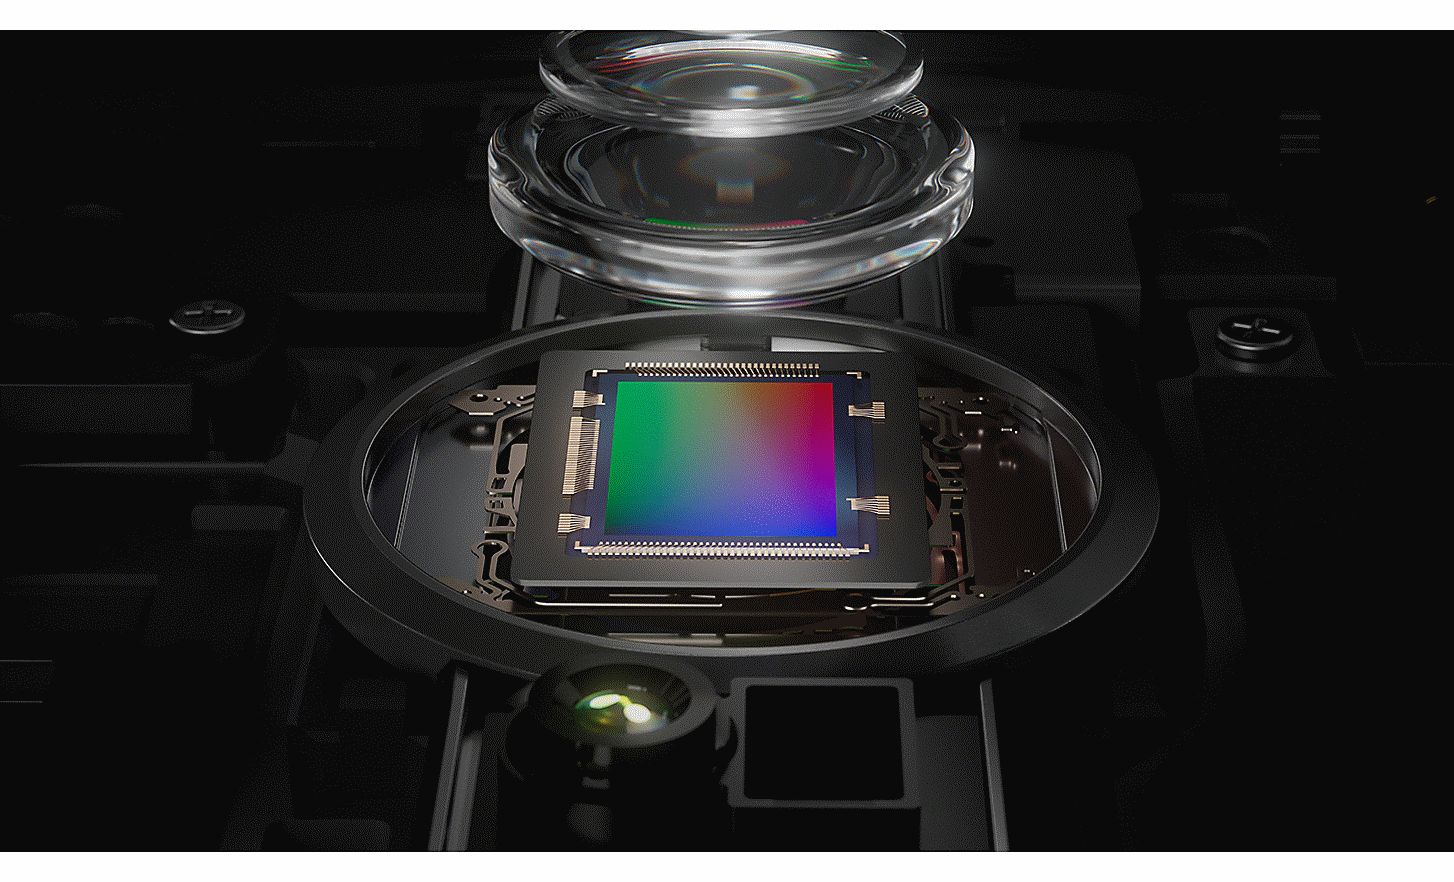 Close-up of 1.0-type image sensor